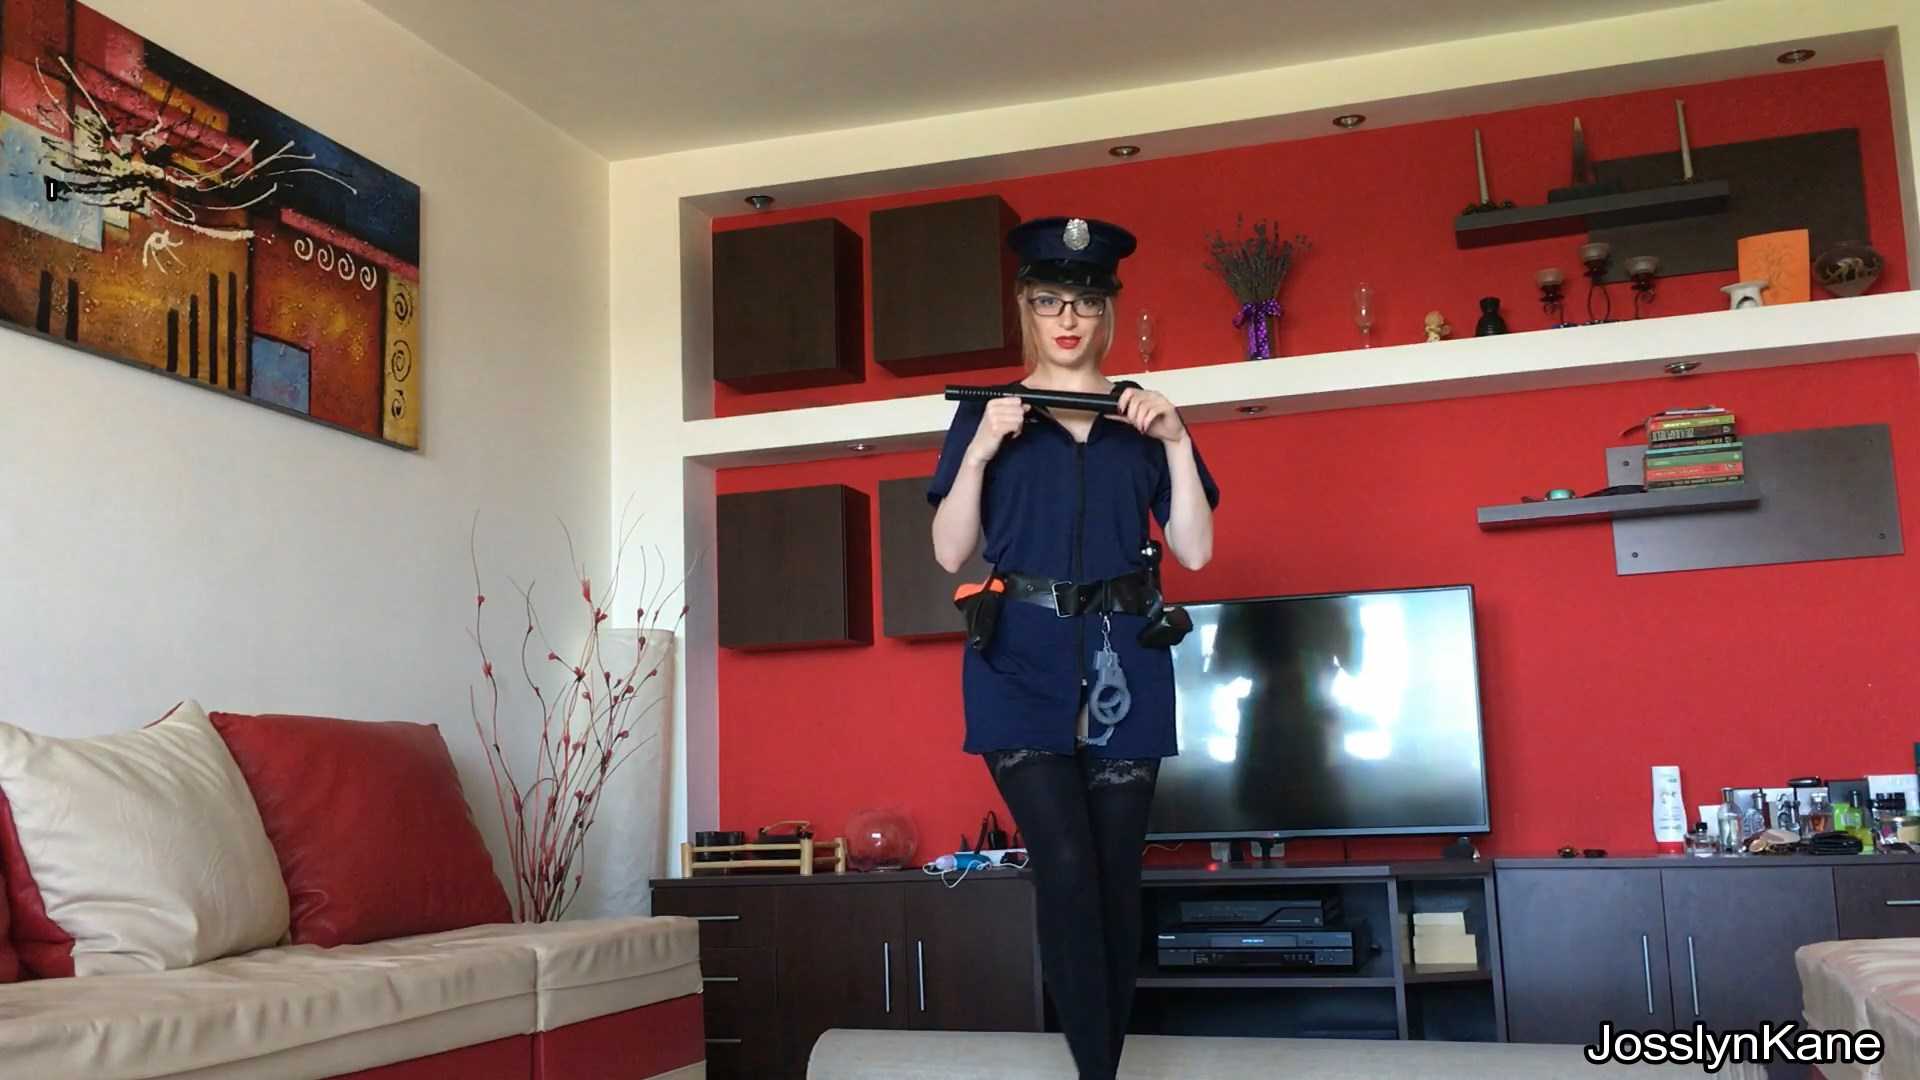 A dirty police officer – JosslynKane | Full HD 1080p | June 28, 2017